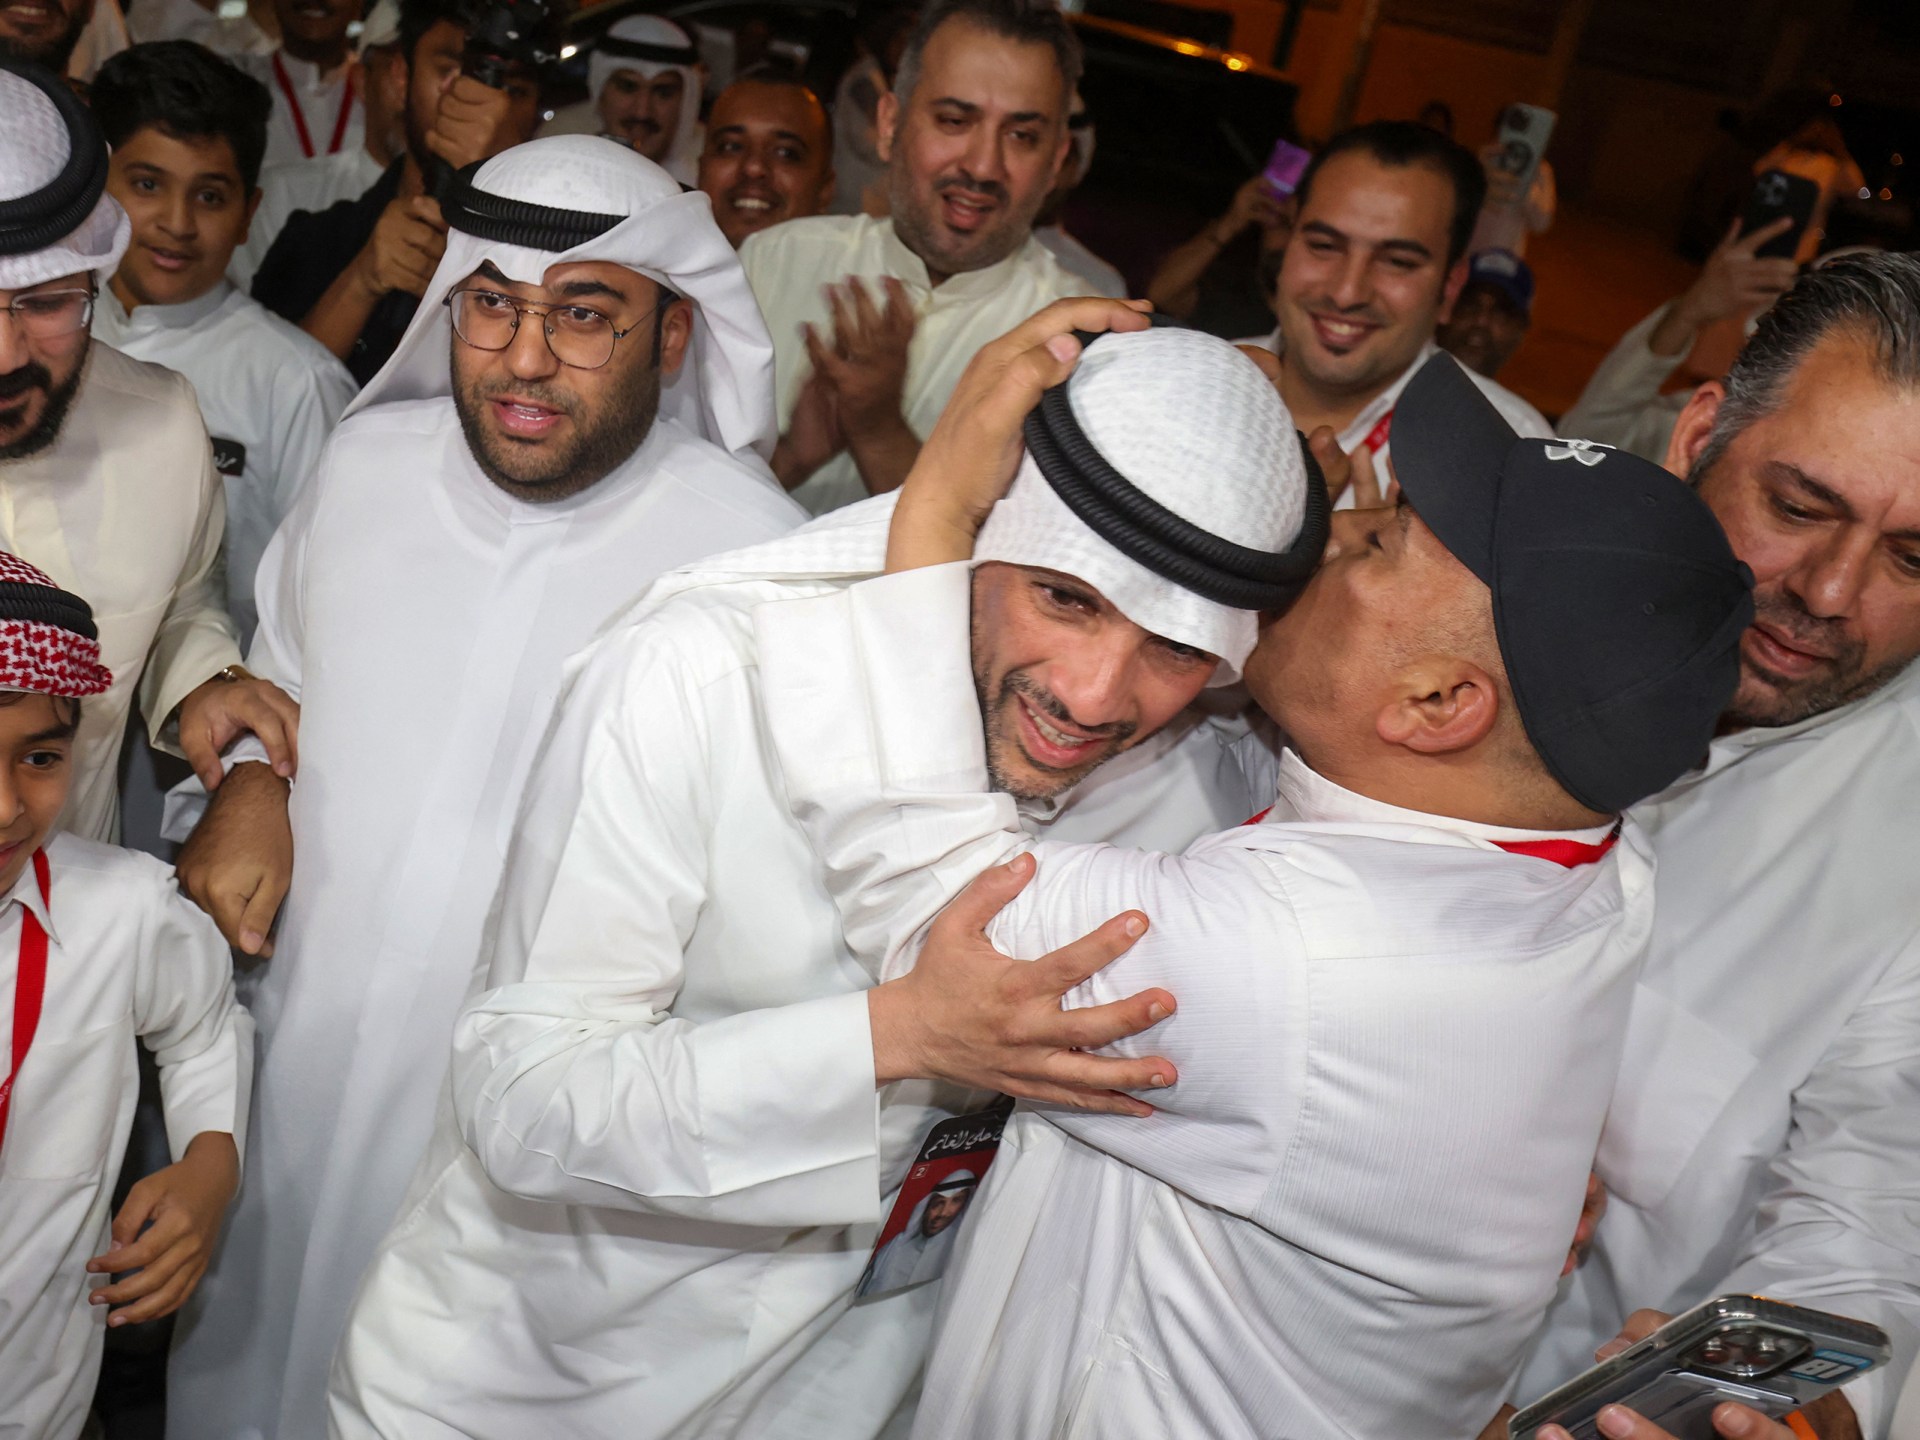 تغييرات طفيفة بعد أول انتخابات برلمانية في الكويت في عهد الأمير الجديد |  الأخبار السياسية